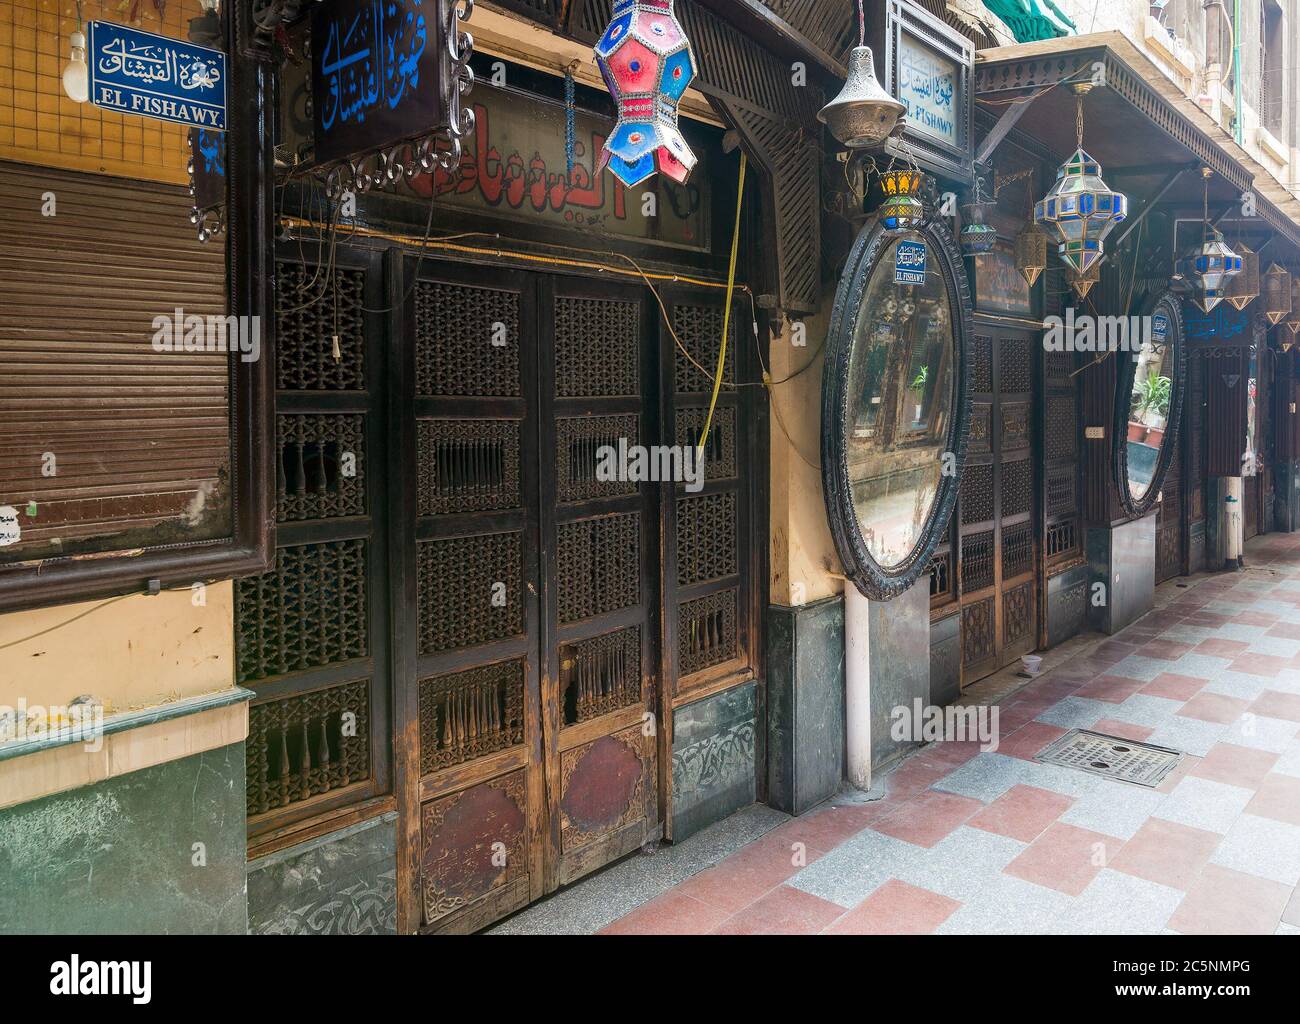 Cairo, Egitto - Giugno 26 2020: Vecchia e famosa caffetteria, El Fishawi, situata nella storica Mamluk era Khan al-Khalili famoso bazar e souq, chiuso durante il periodo di blocco Covid-19 per la prima volta dal 1773 Foto Stock